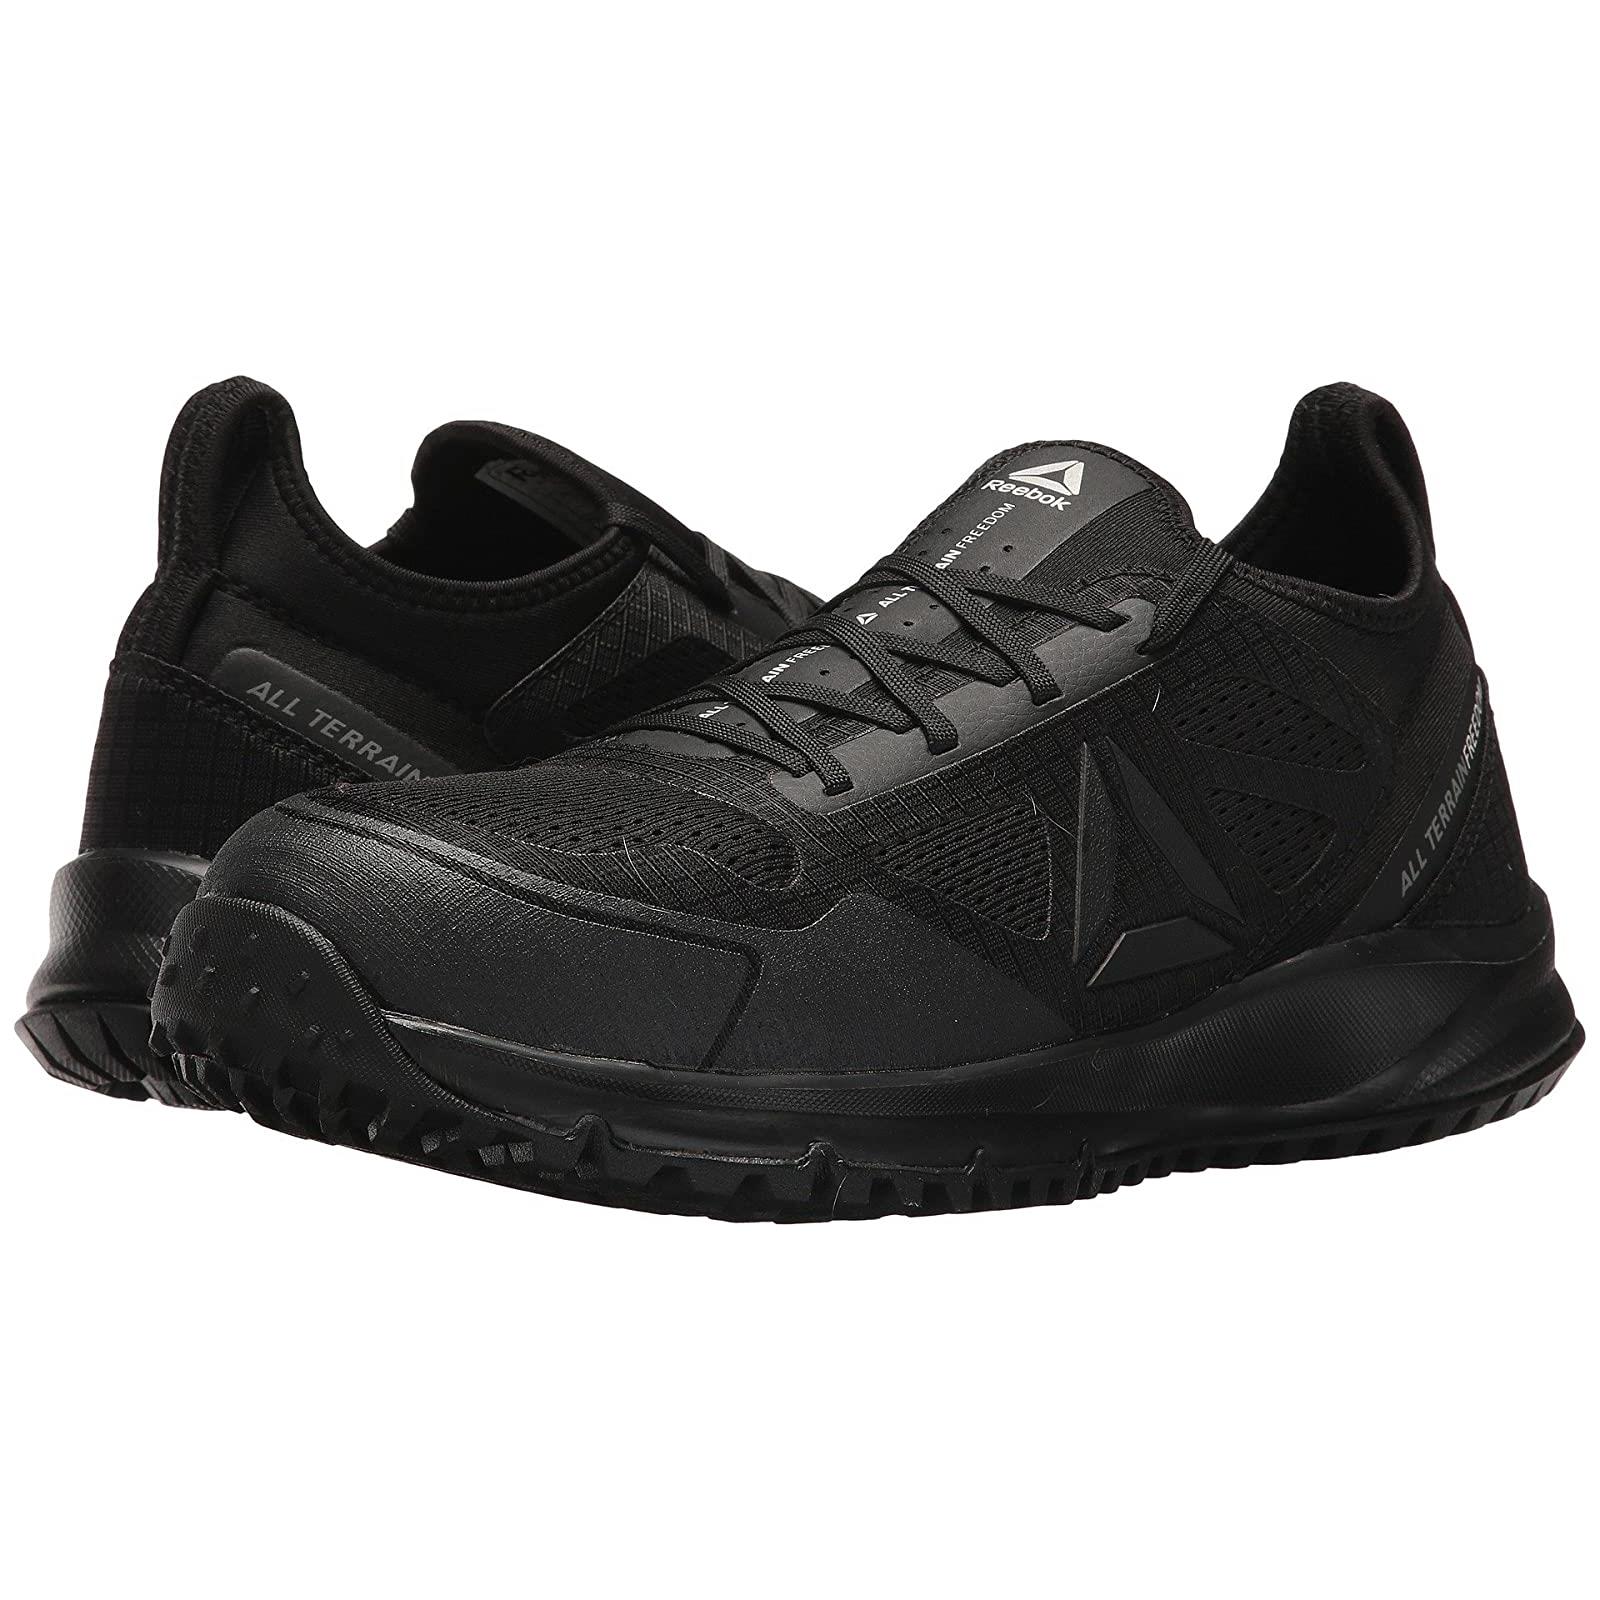 Man`s Sneakers Athletic Shoes Reebok Work All Terrain Work Black